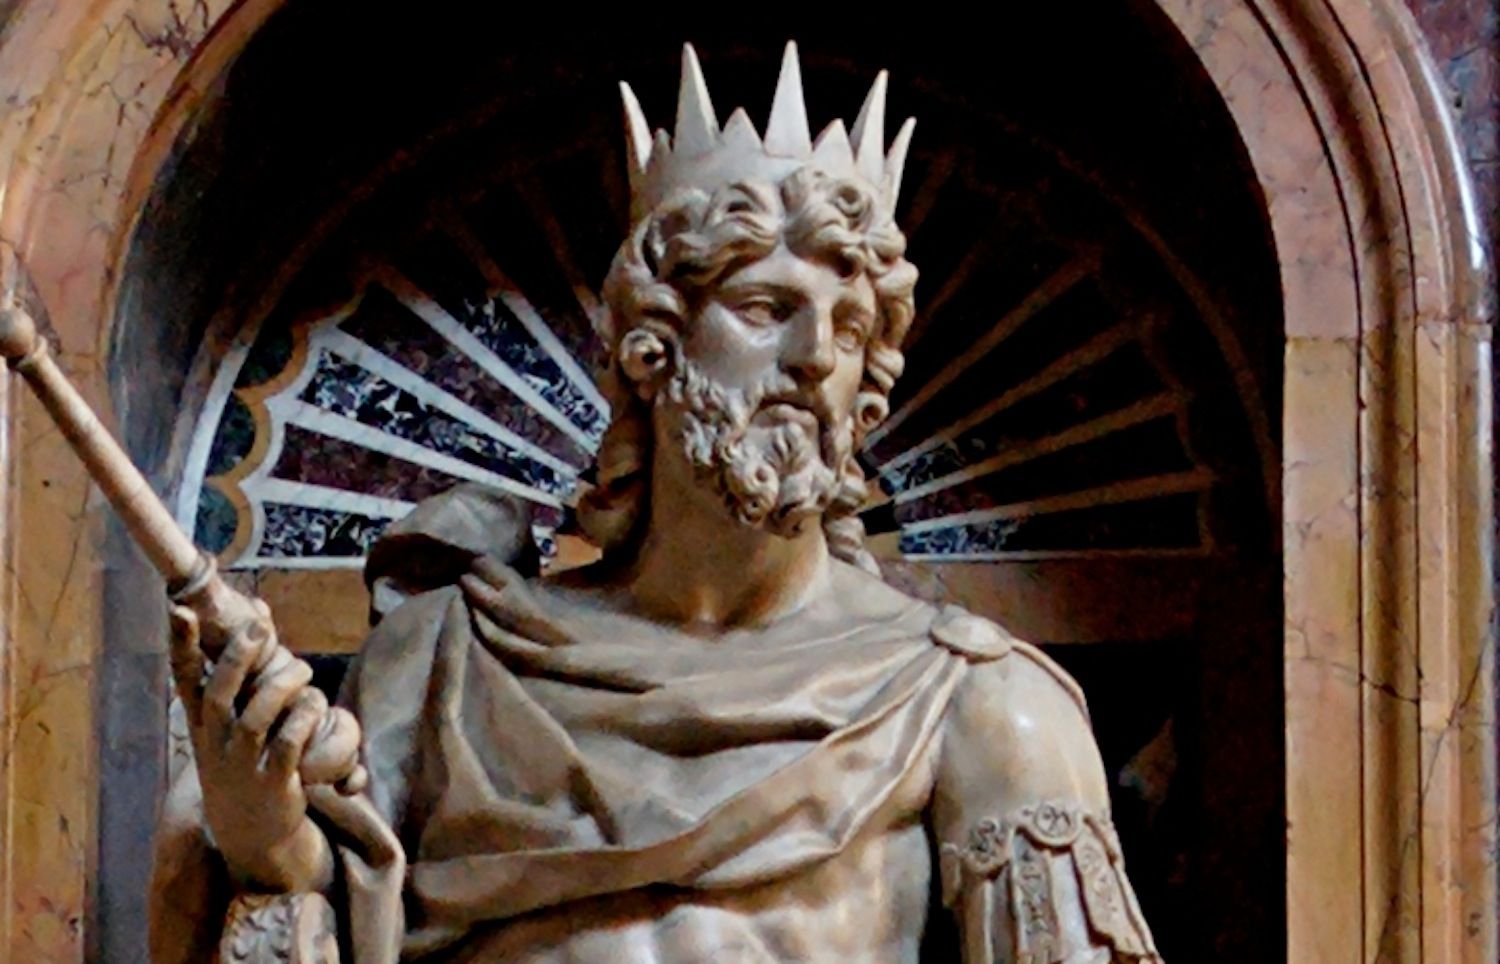 Biografía del rey David, líder judío bíblico